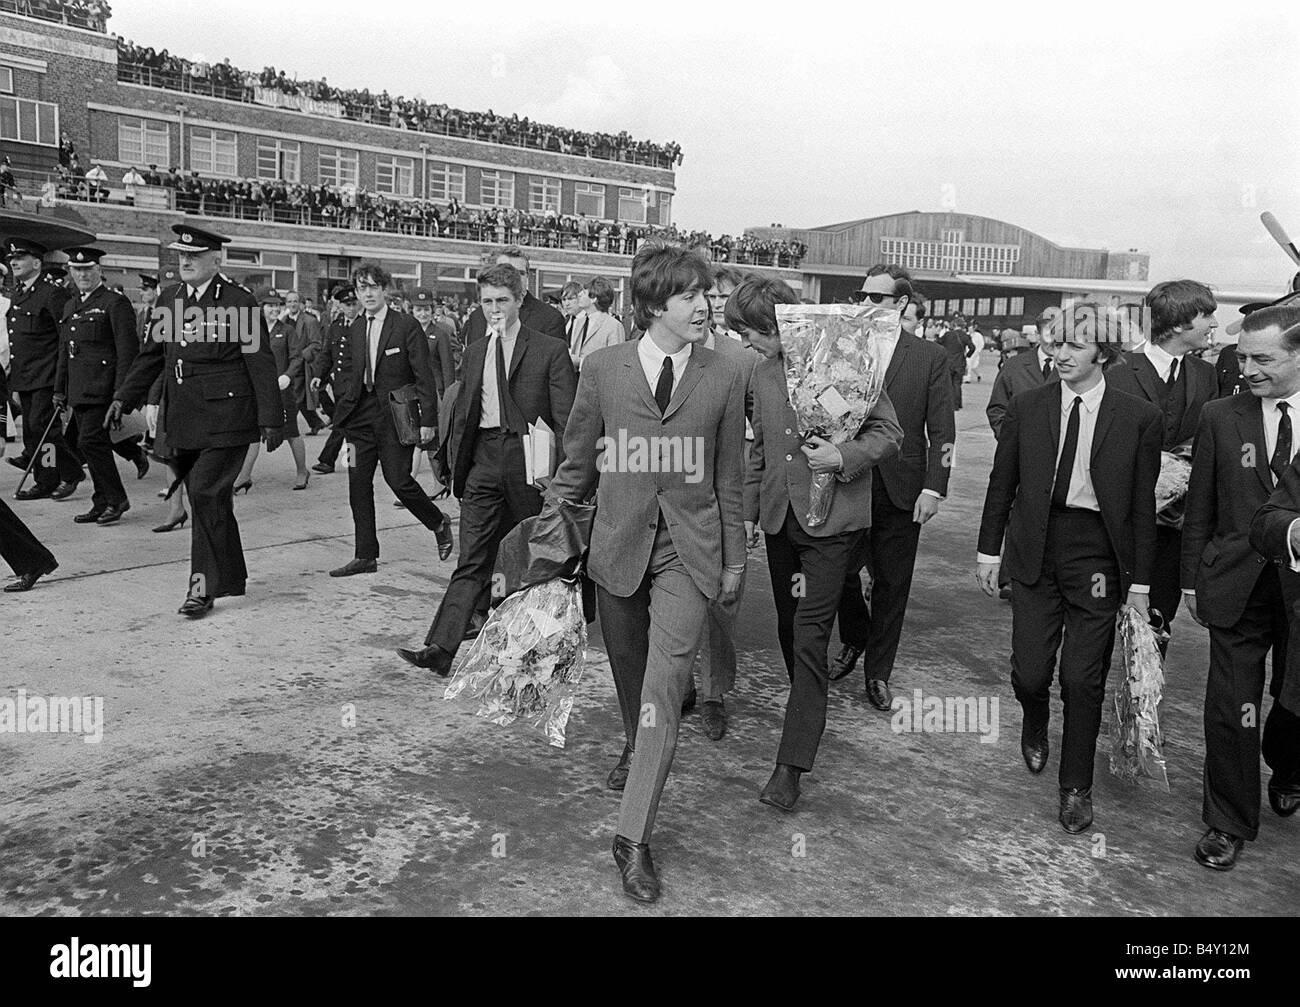 Gruppo pop The Beatles Luglio 1964 John Lennon Paul McCartney George Harrison Ringo Starr dei Beatles in Liverpool arrivano all'Aeroporto di Liverpool per la premiere del nord di una dura giornata s notte azienda bouquet di fiori Foto Stock